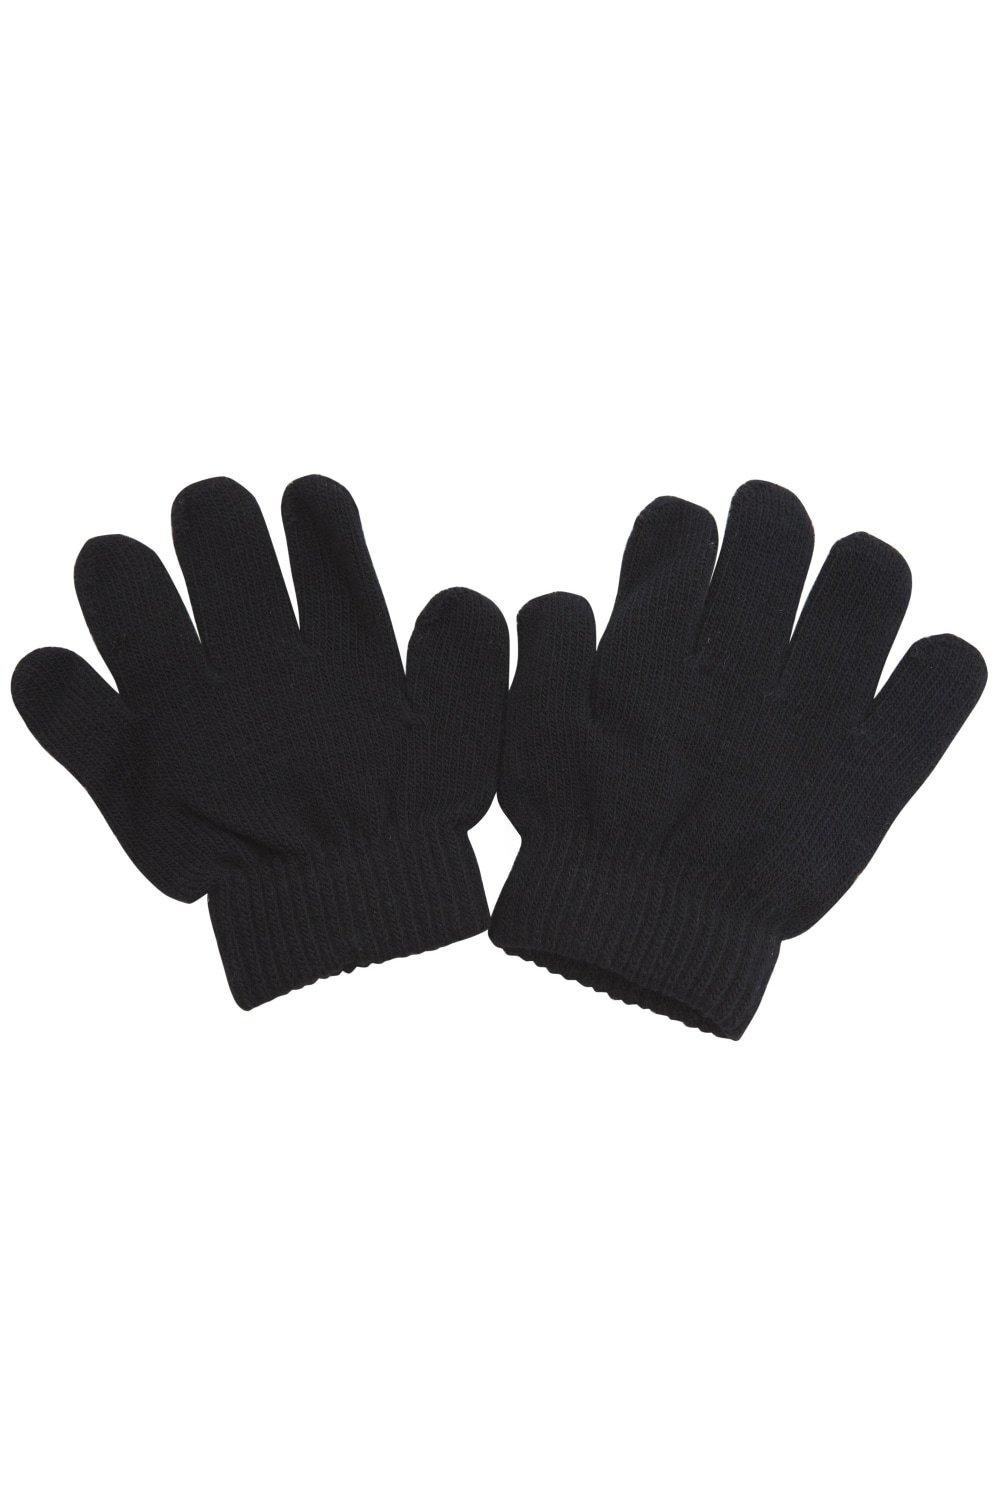 Зимние волшебные перчатки Universal Textiles, черный распродажа термовязаные зимние перчатки universal textiles серый